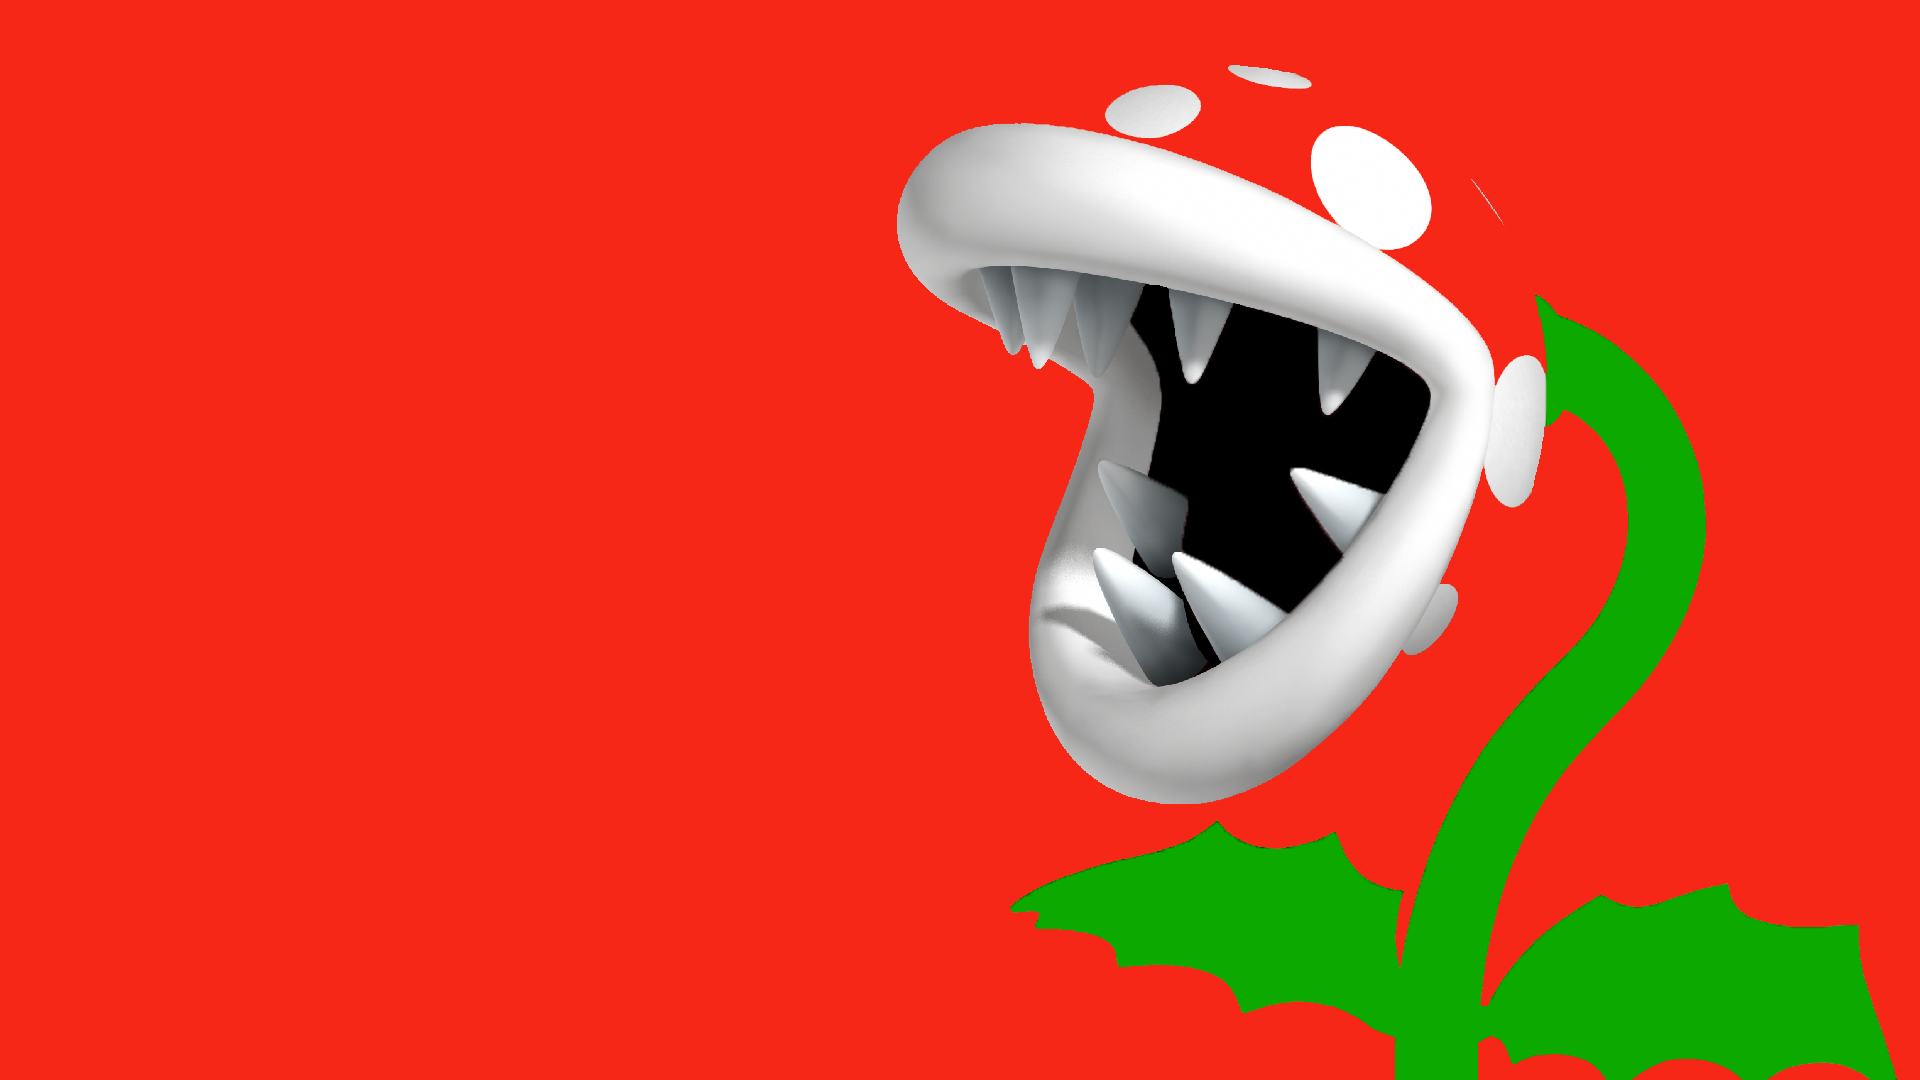 Mario Bros. HD Wallpaper by AdrinCg